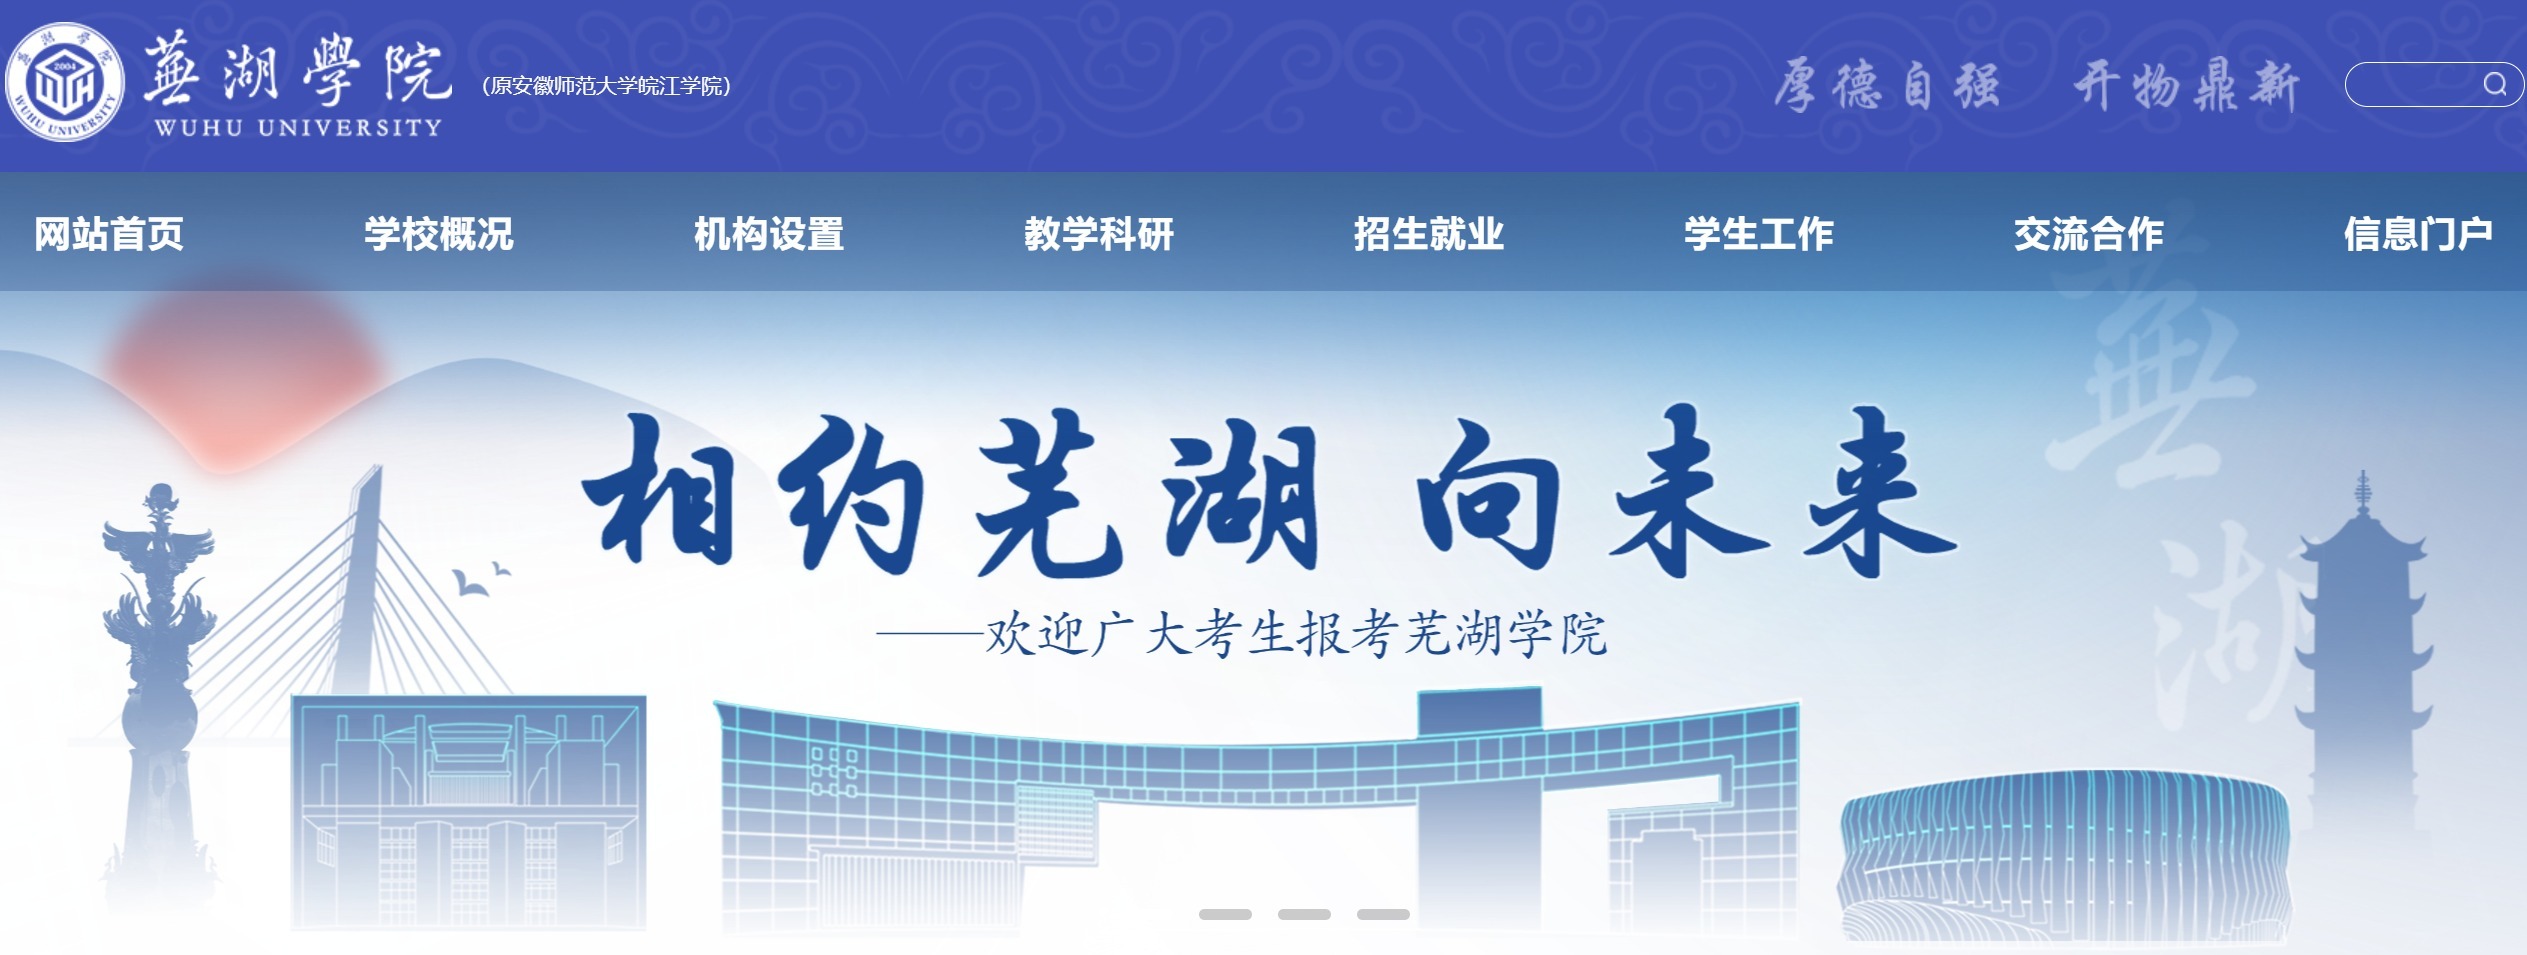 bsport体育:安徽师大皖江学院转设为芜湖学院 学校新官网已上线(图1)